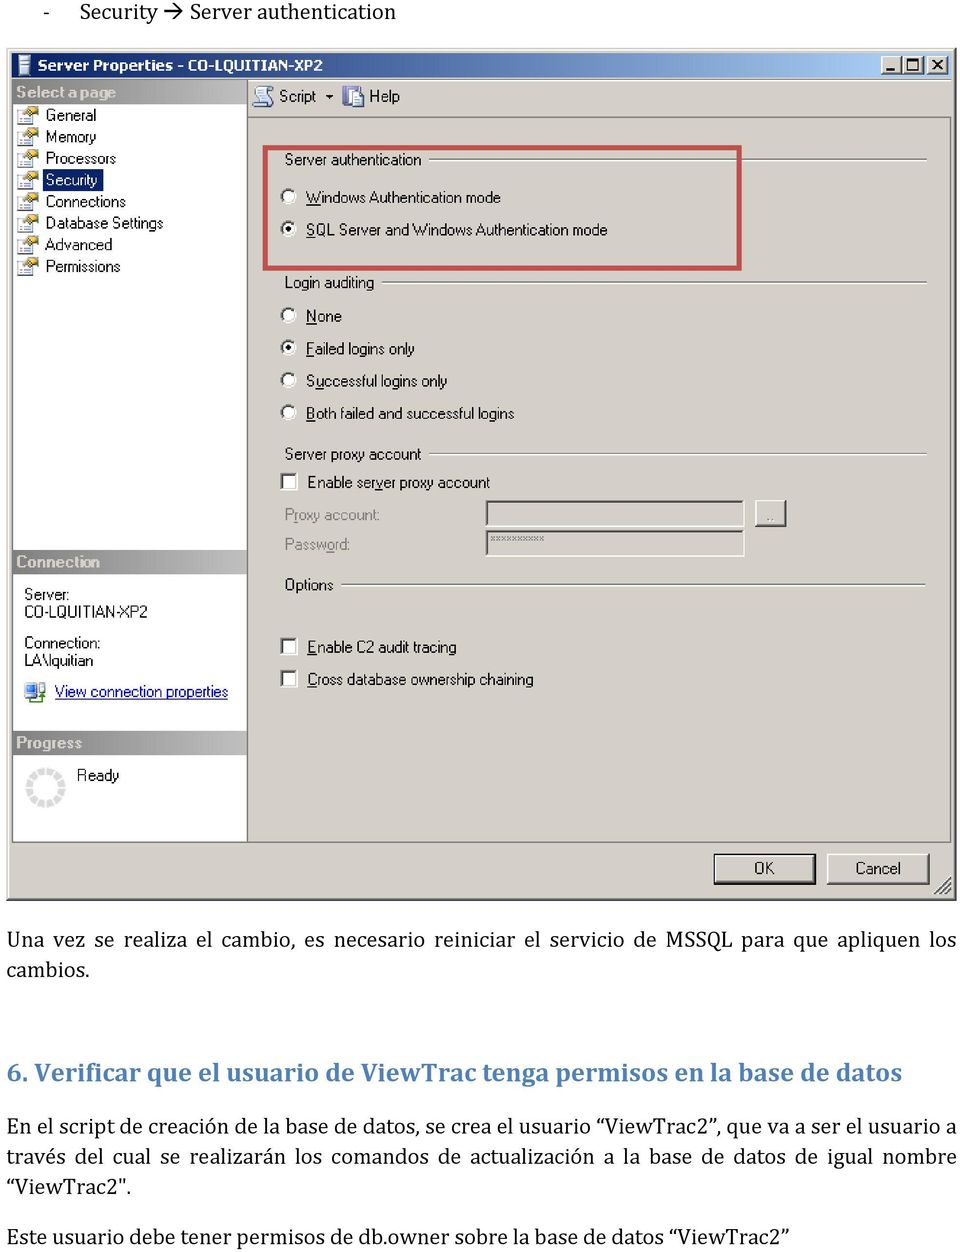 Verificar que el usuario de ViewTrac tenga permisos en la base de datos En el script de creación de la base de datos, se